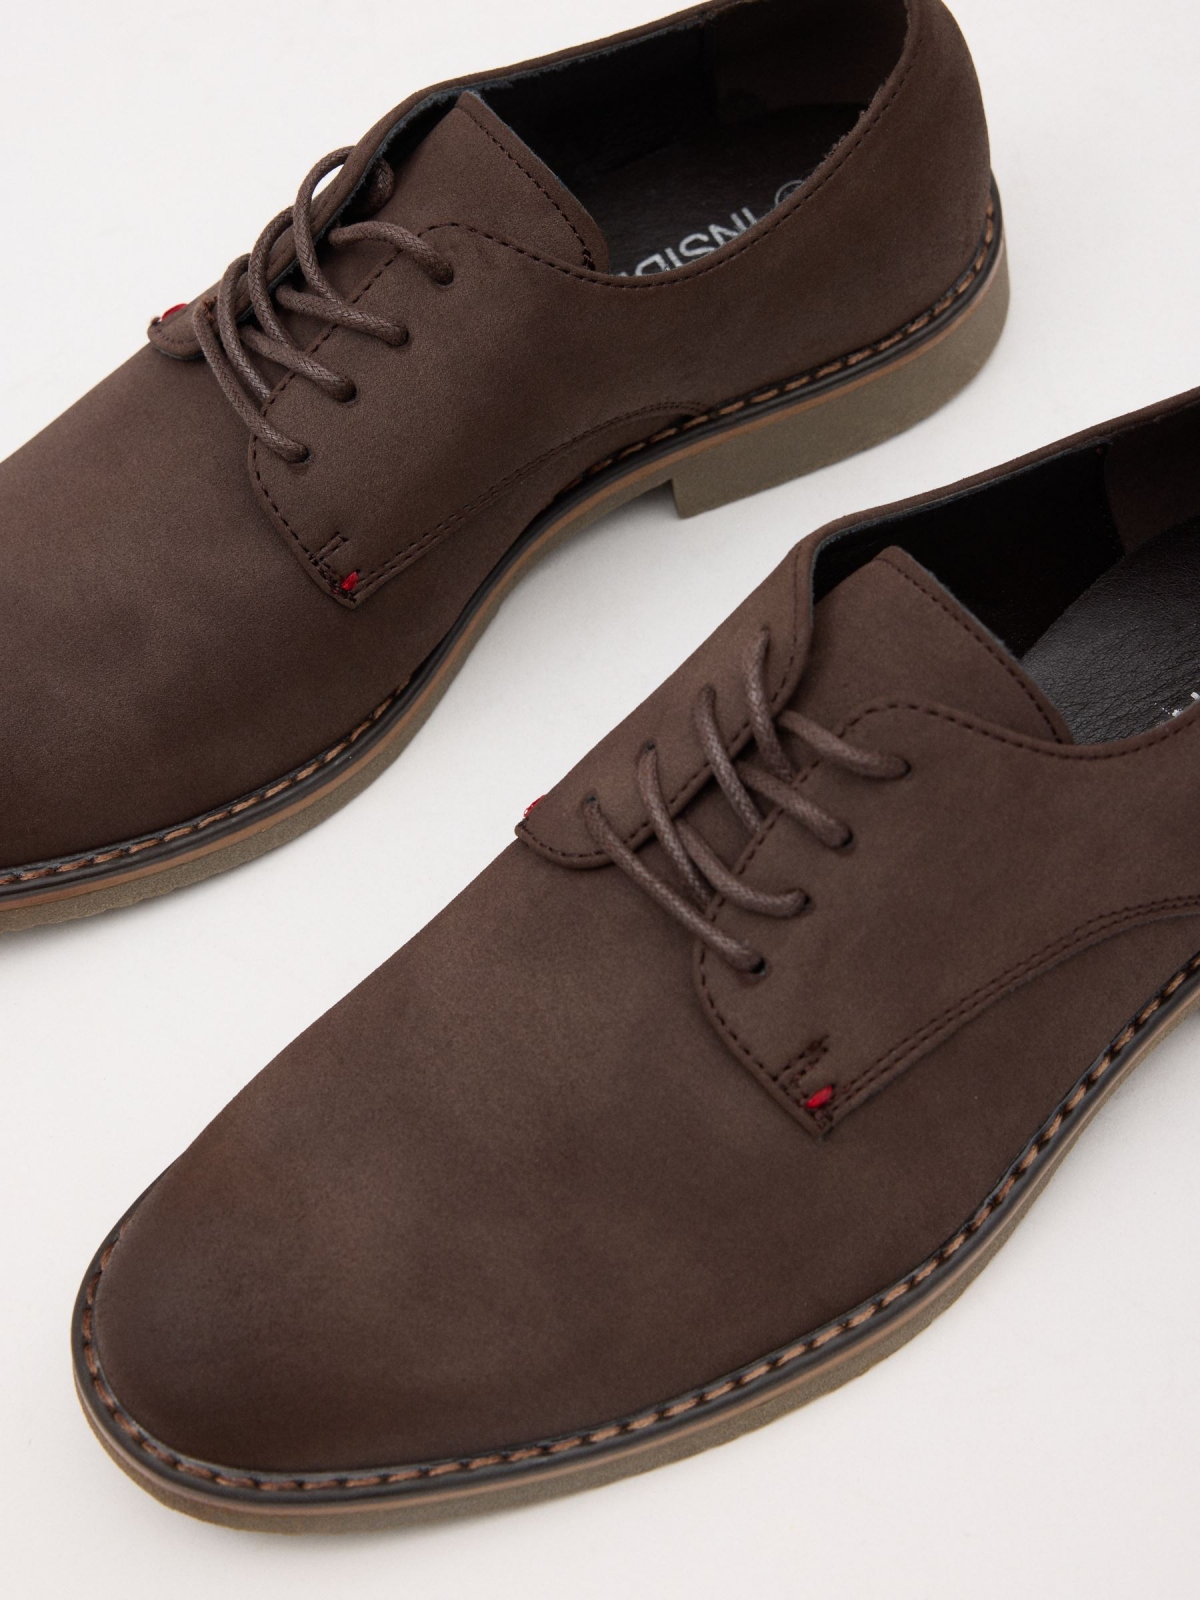 Zapato clásico de polipiel marrón tostado vista detalle